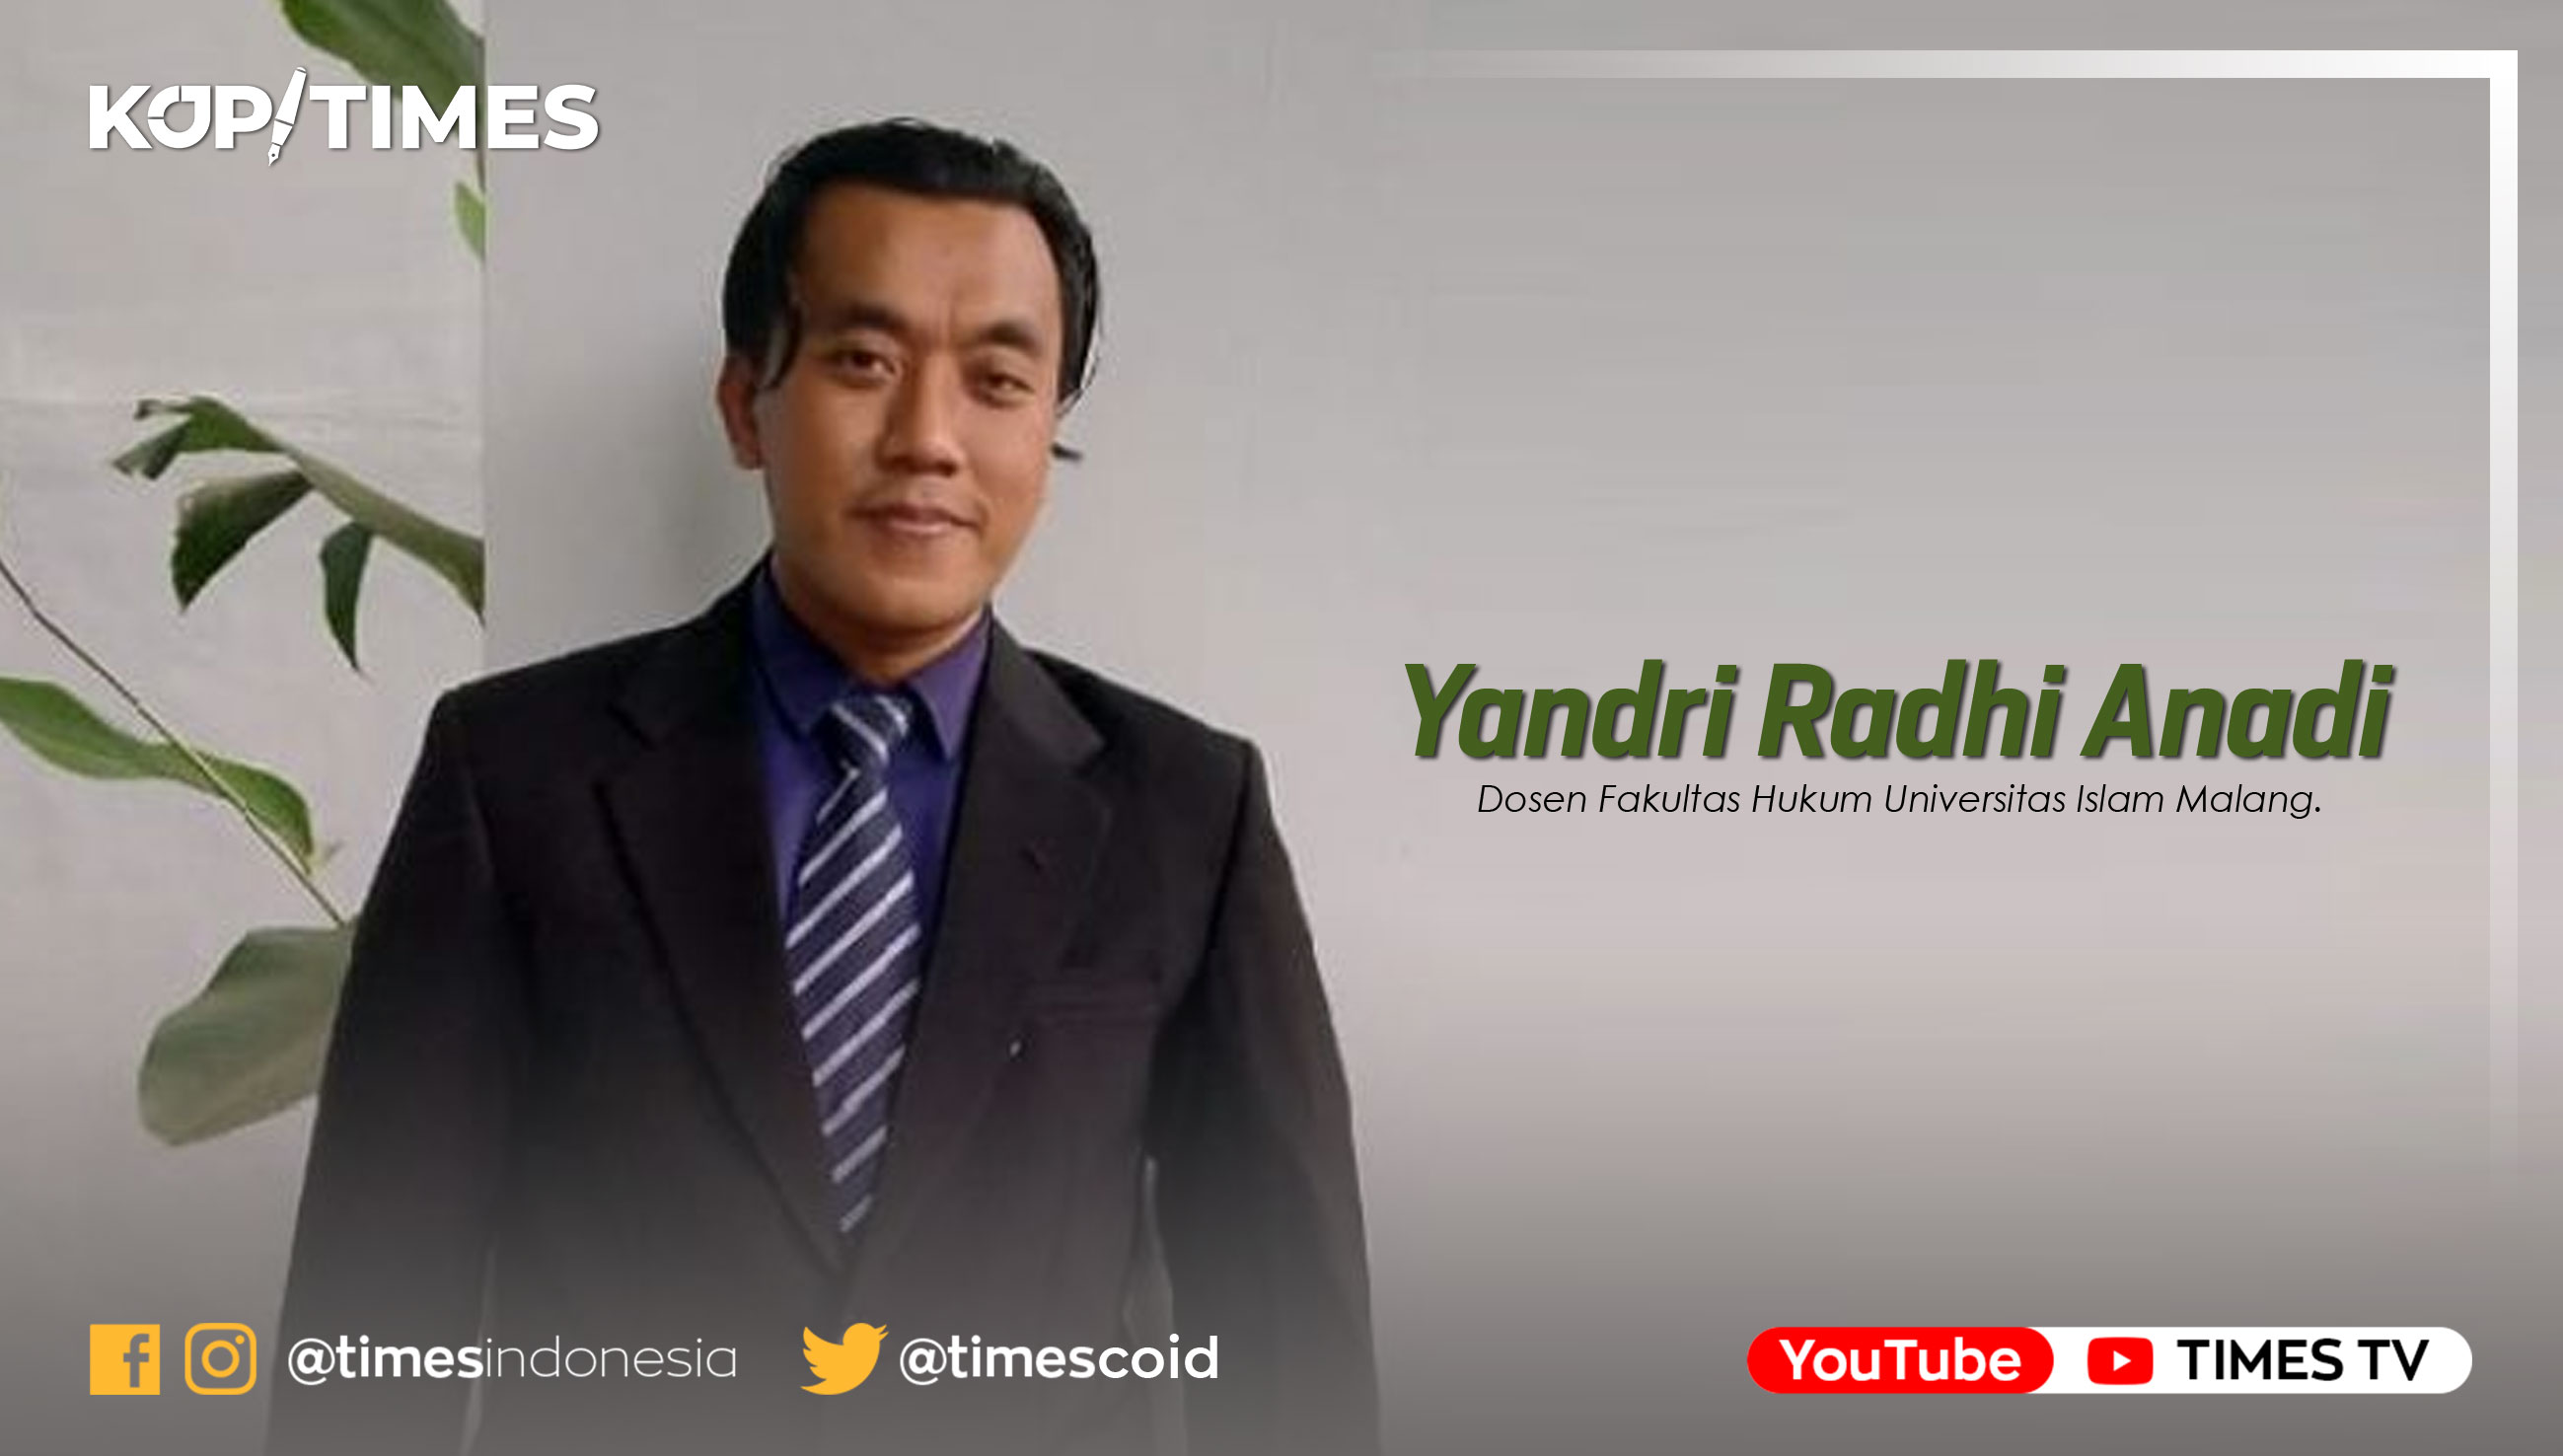 Yandri Radhi Anadi, SH., M.Kn, Dosen Fakultas Hukum Universitas Islam Malang.